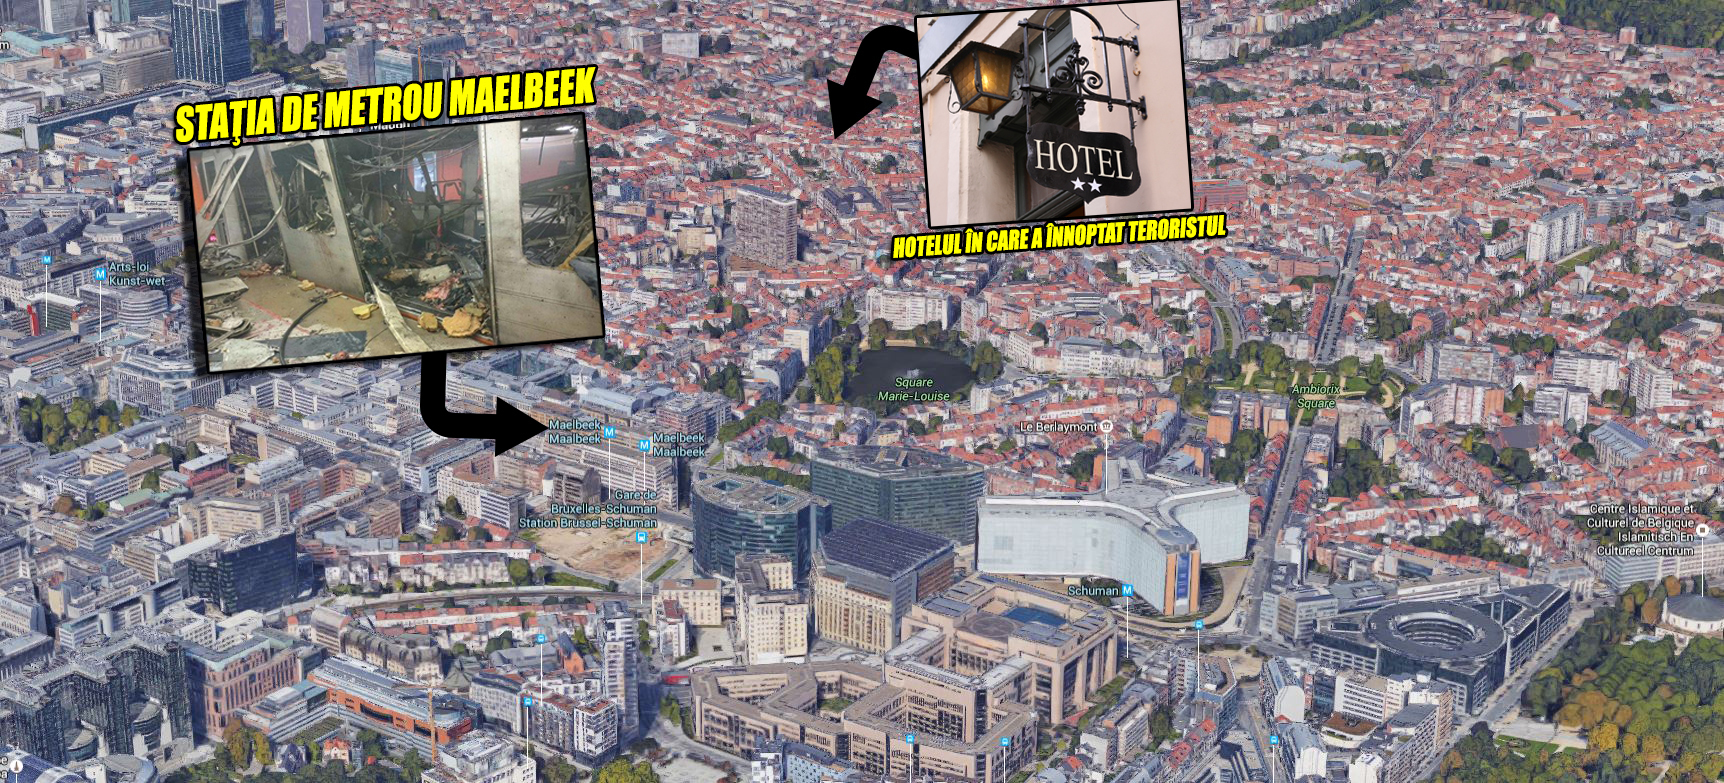 Hotelul în care s-ar fi plănuit atentatul de la metrou este situat la nici 10 minute de mers pe jos de staţia Maelbeek